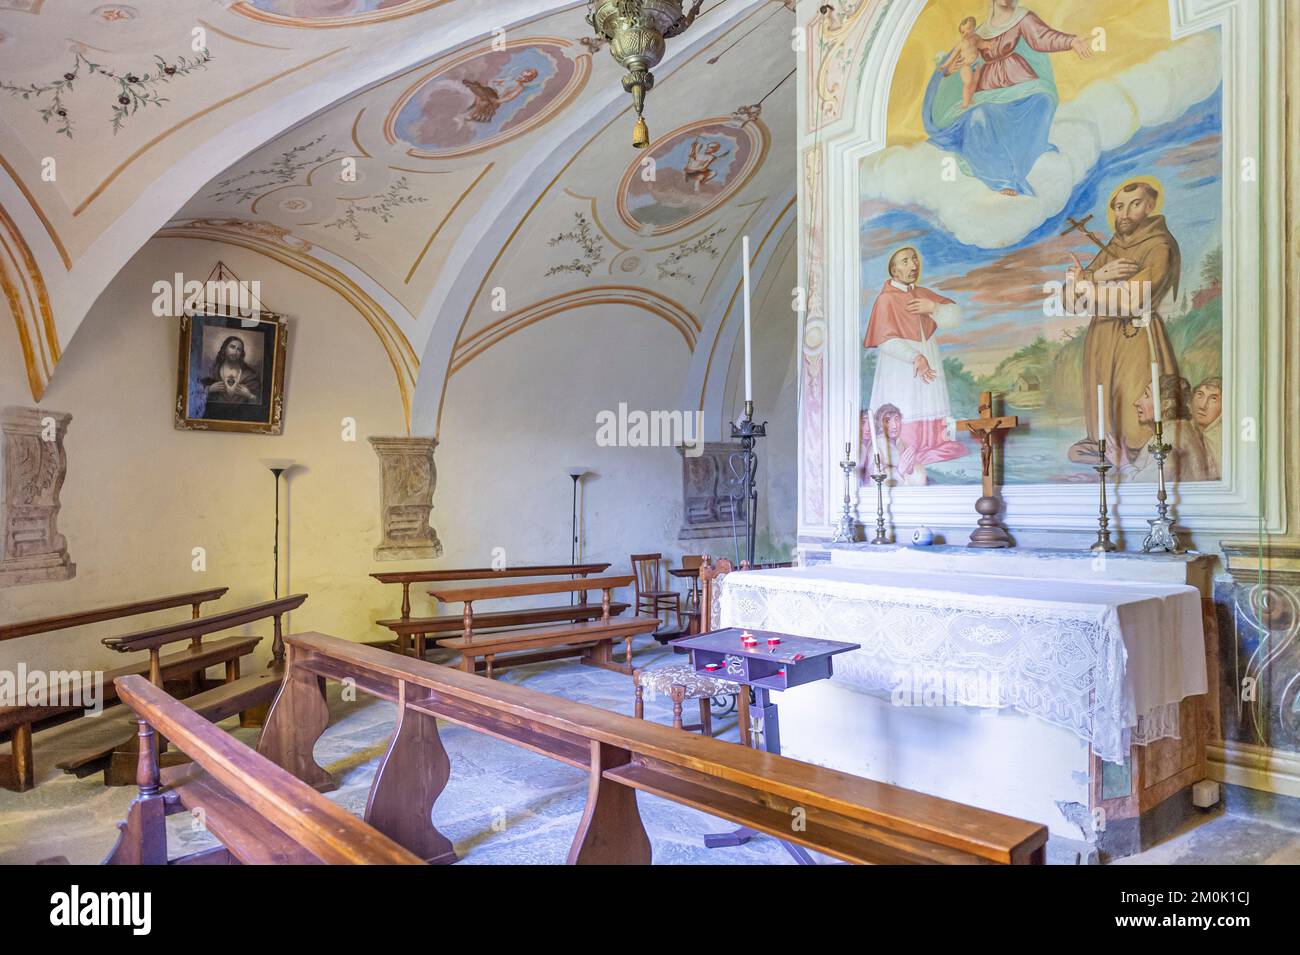 église des saints giustino et giovita : chapelle de la disciplinine, malonno, italie Banque D'Images